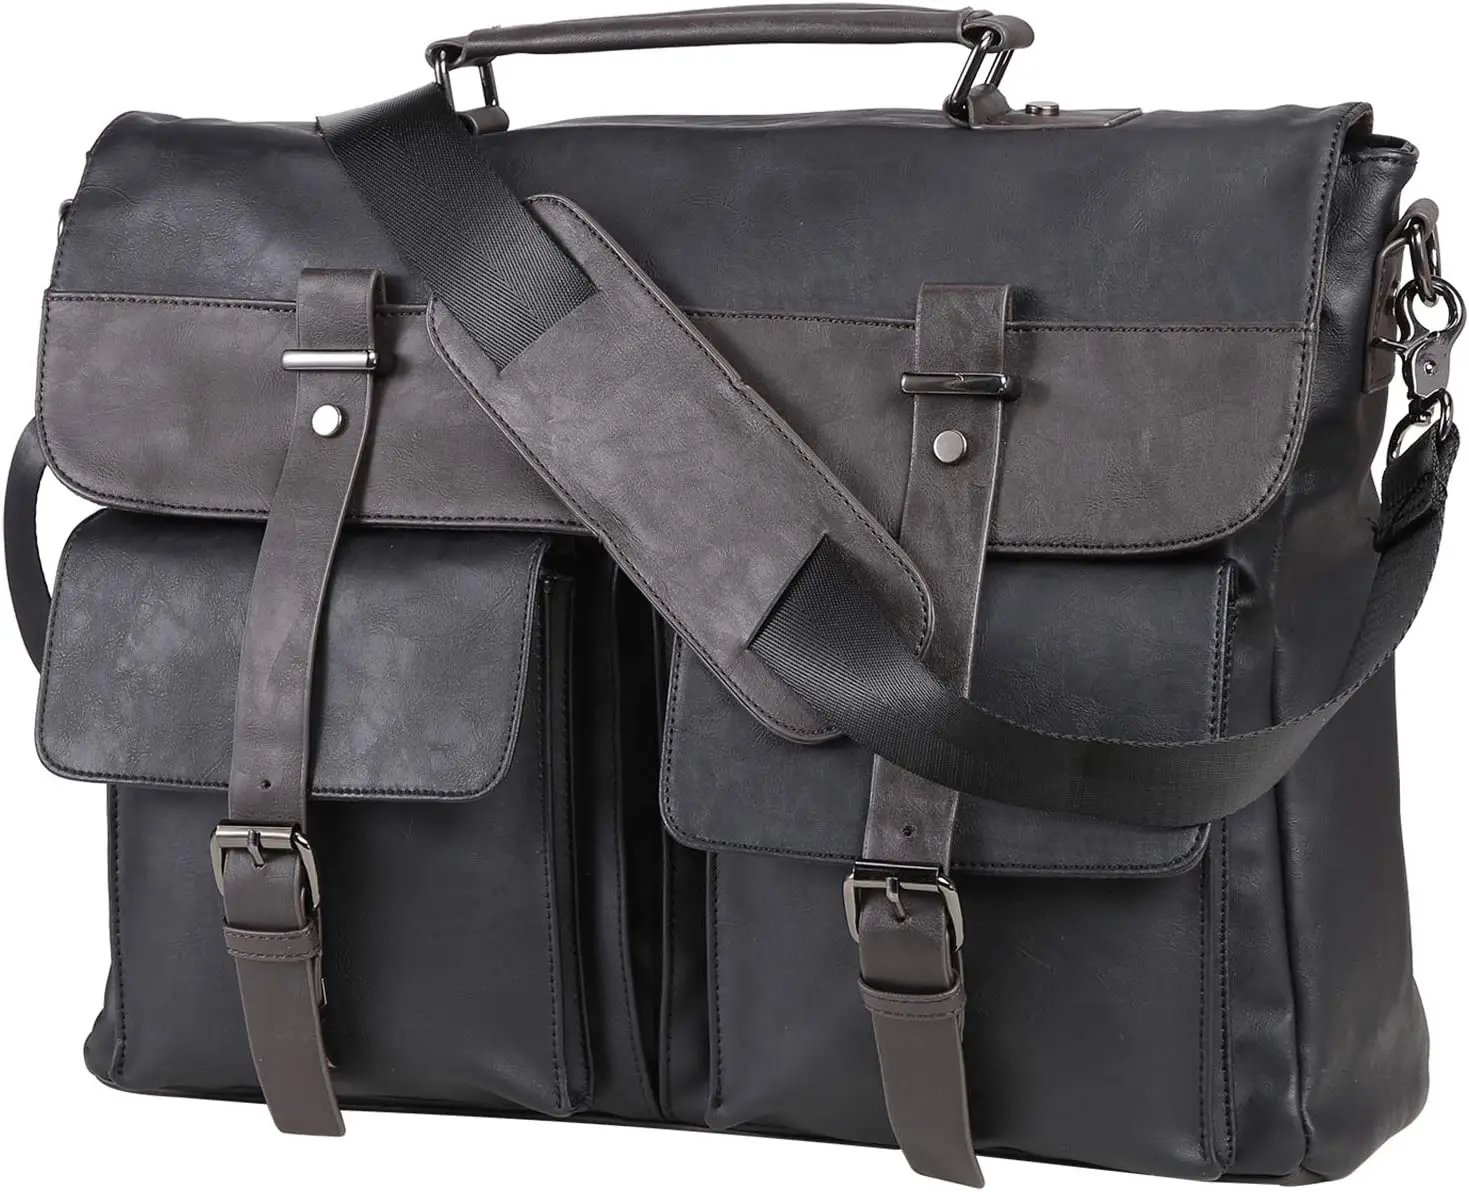 Men's leather messenger bag, 15.6-inch vintage laptop bag briefcase